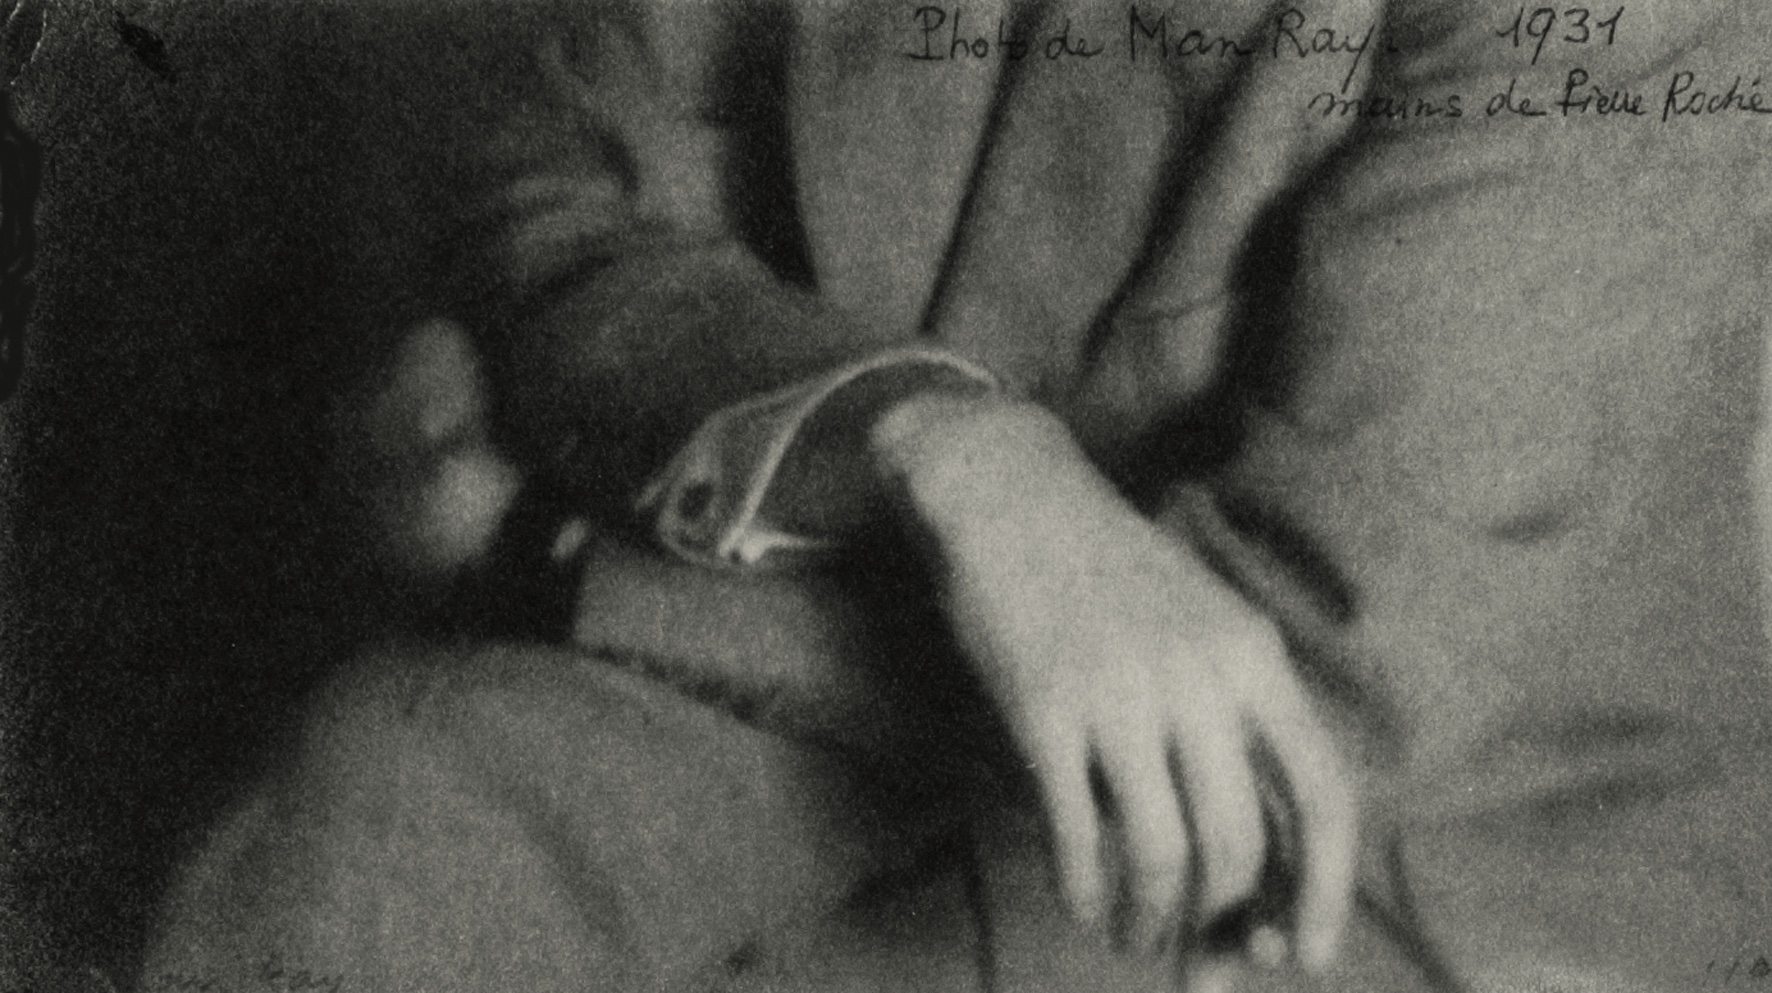 Fondation Agnès b, Man Ray, Les mains de Henri-Pierre Roché, 1931